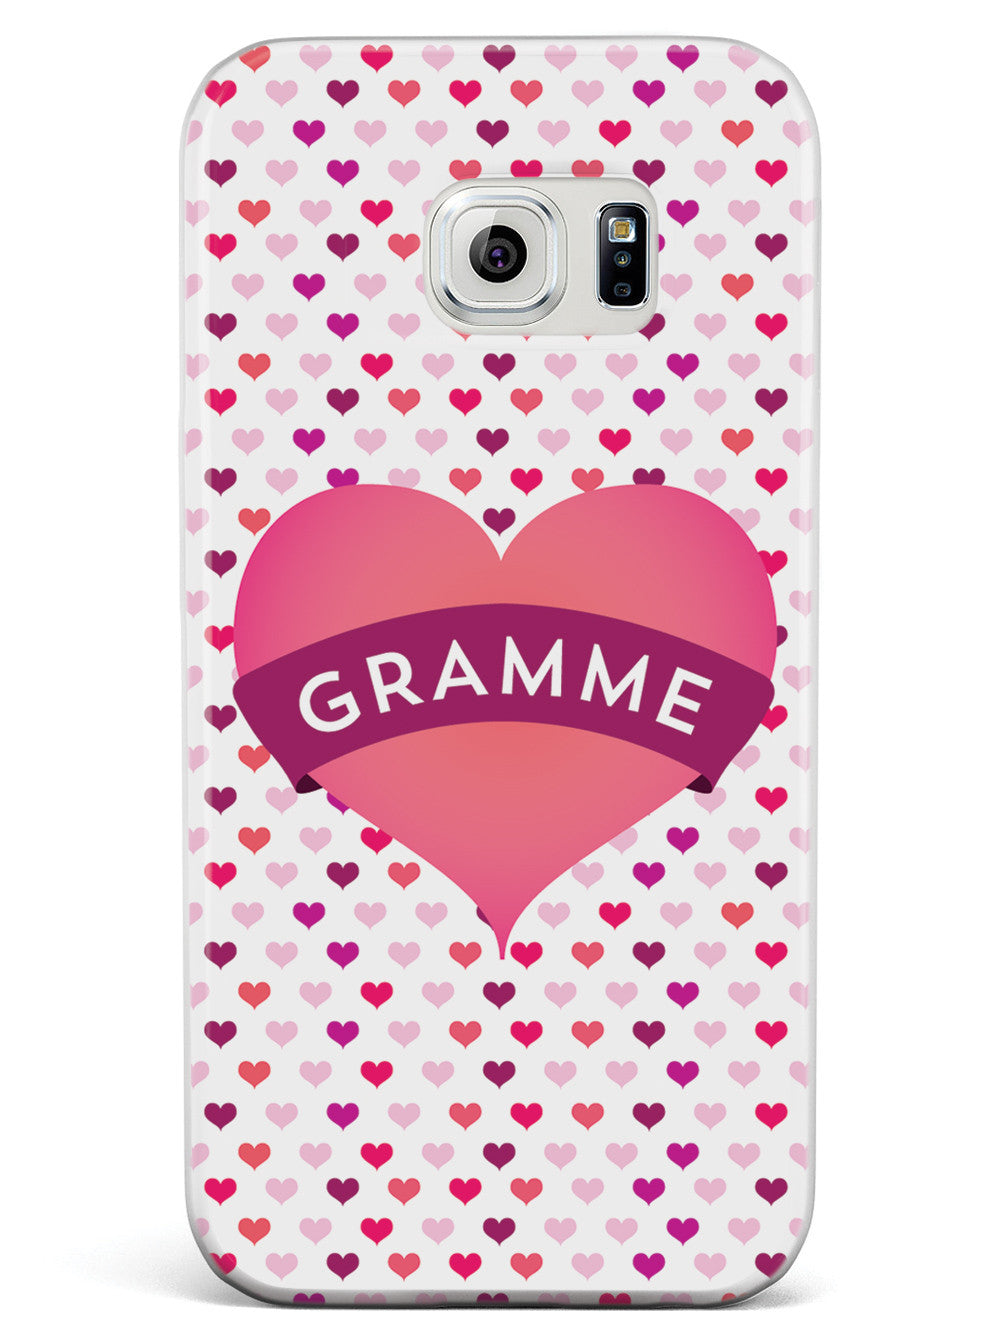 Gramme Heart for Grandma Case